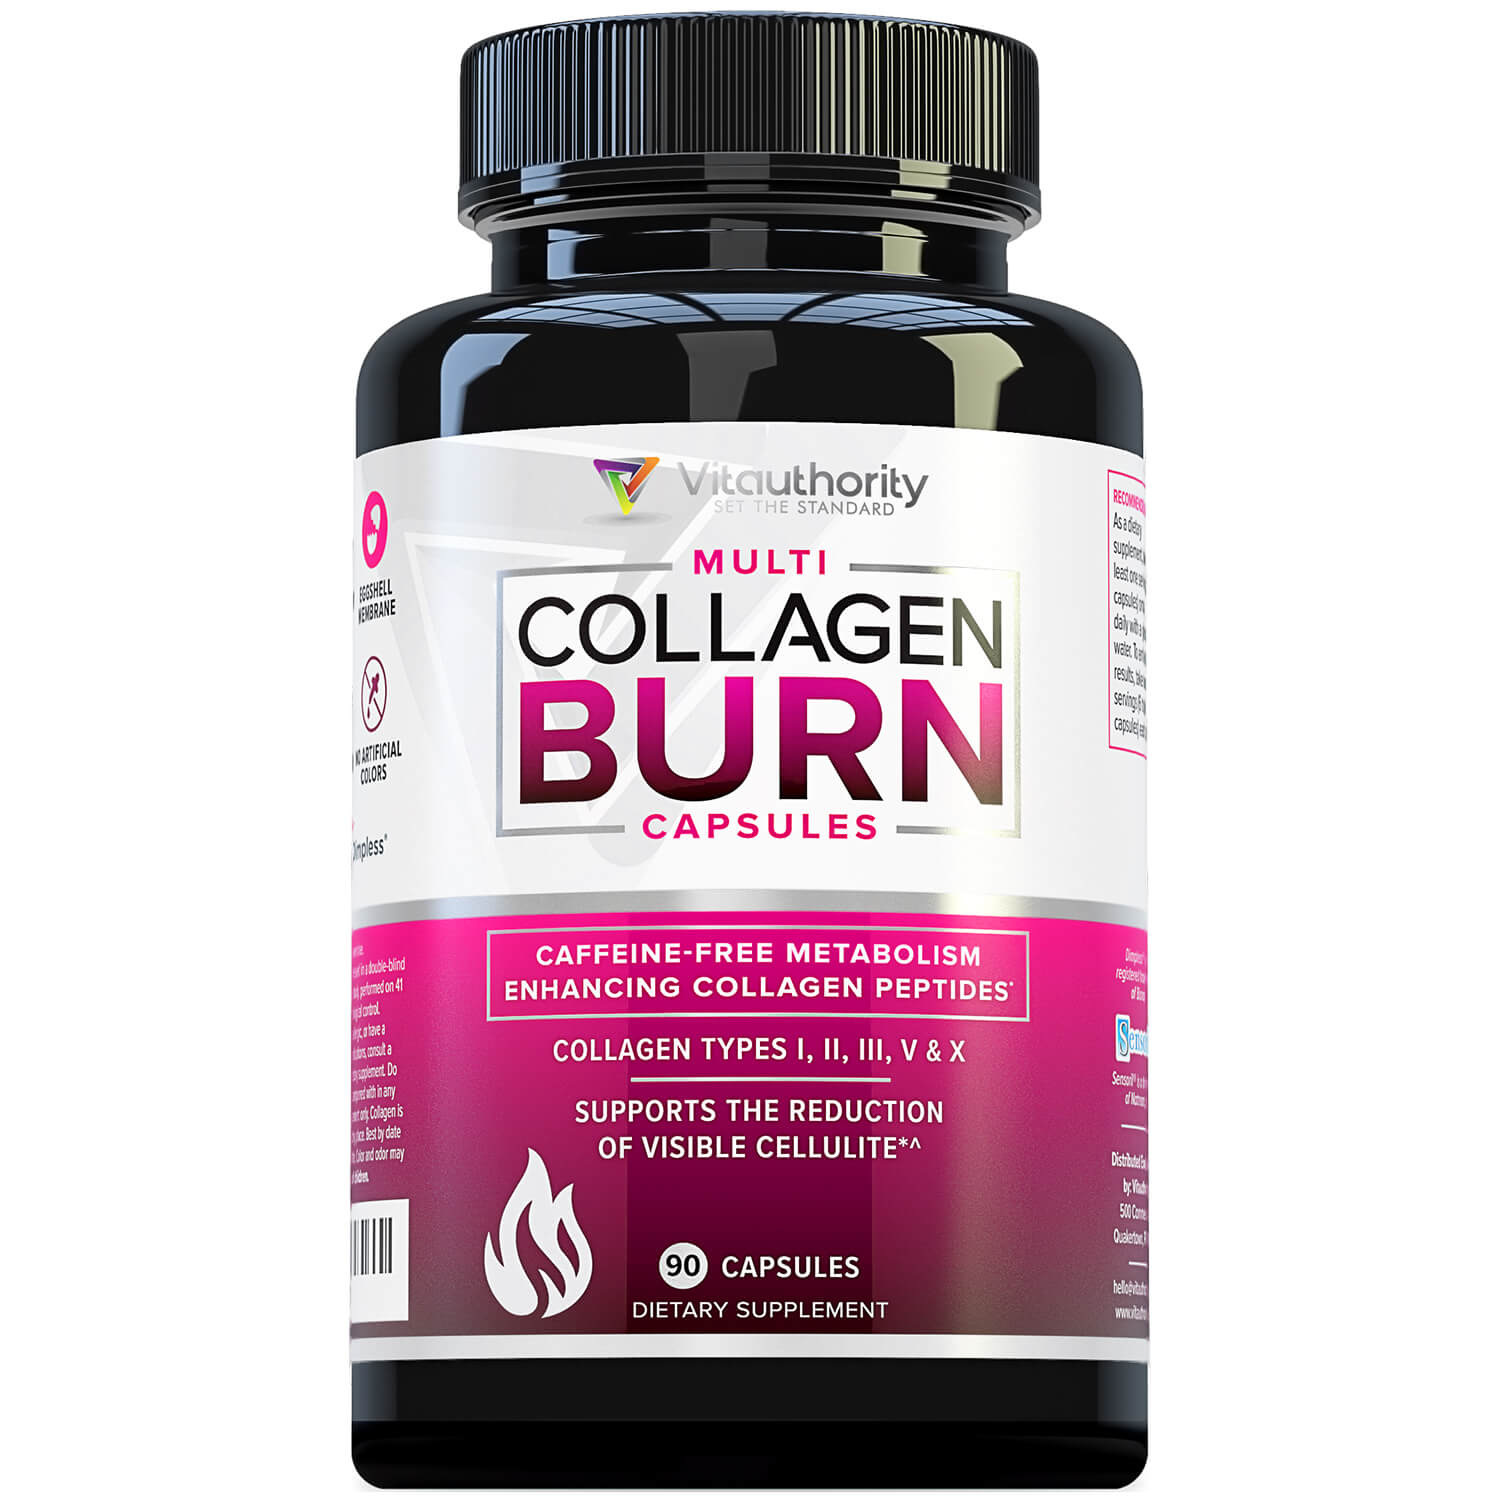 Multi Collagen Burn Capsules